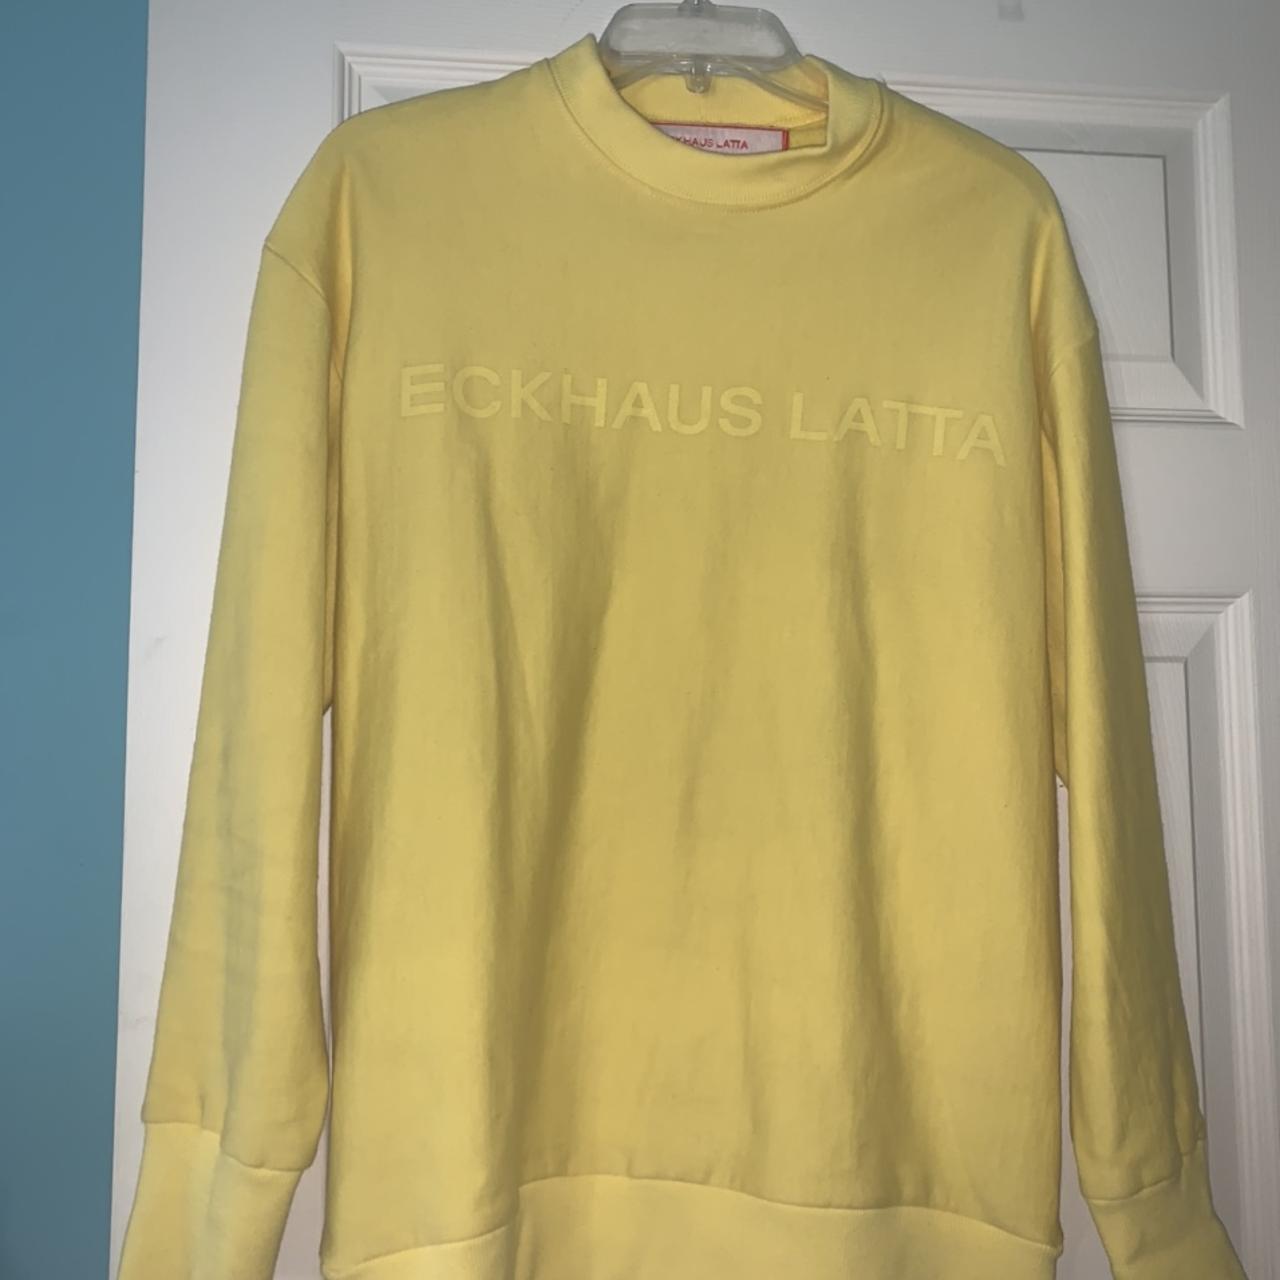 Eckhaus Latta Women's Yellow Sweatshirt | Depop